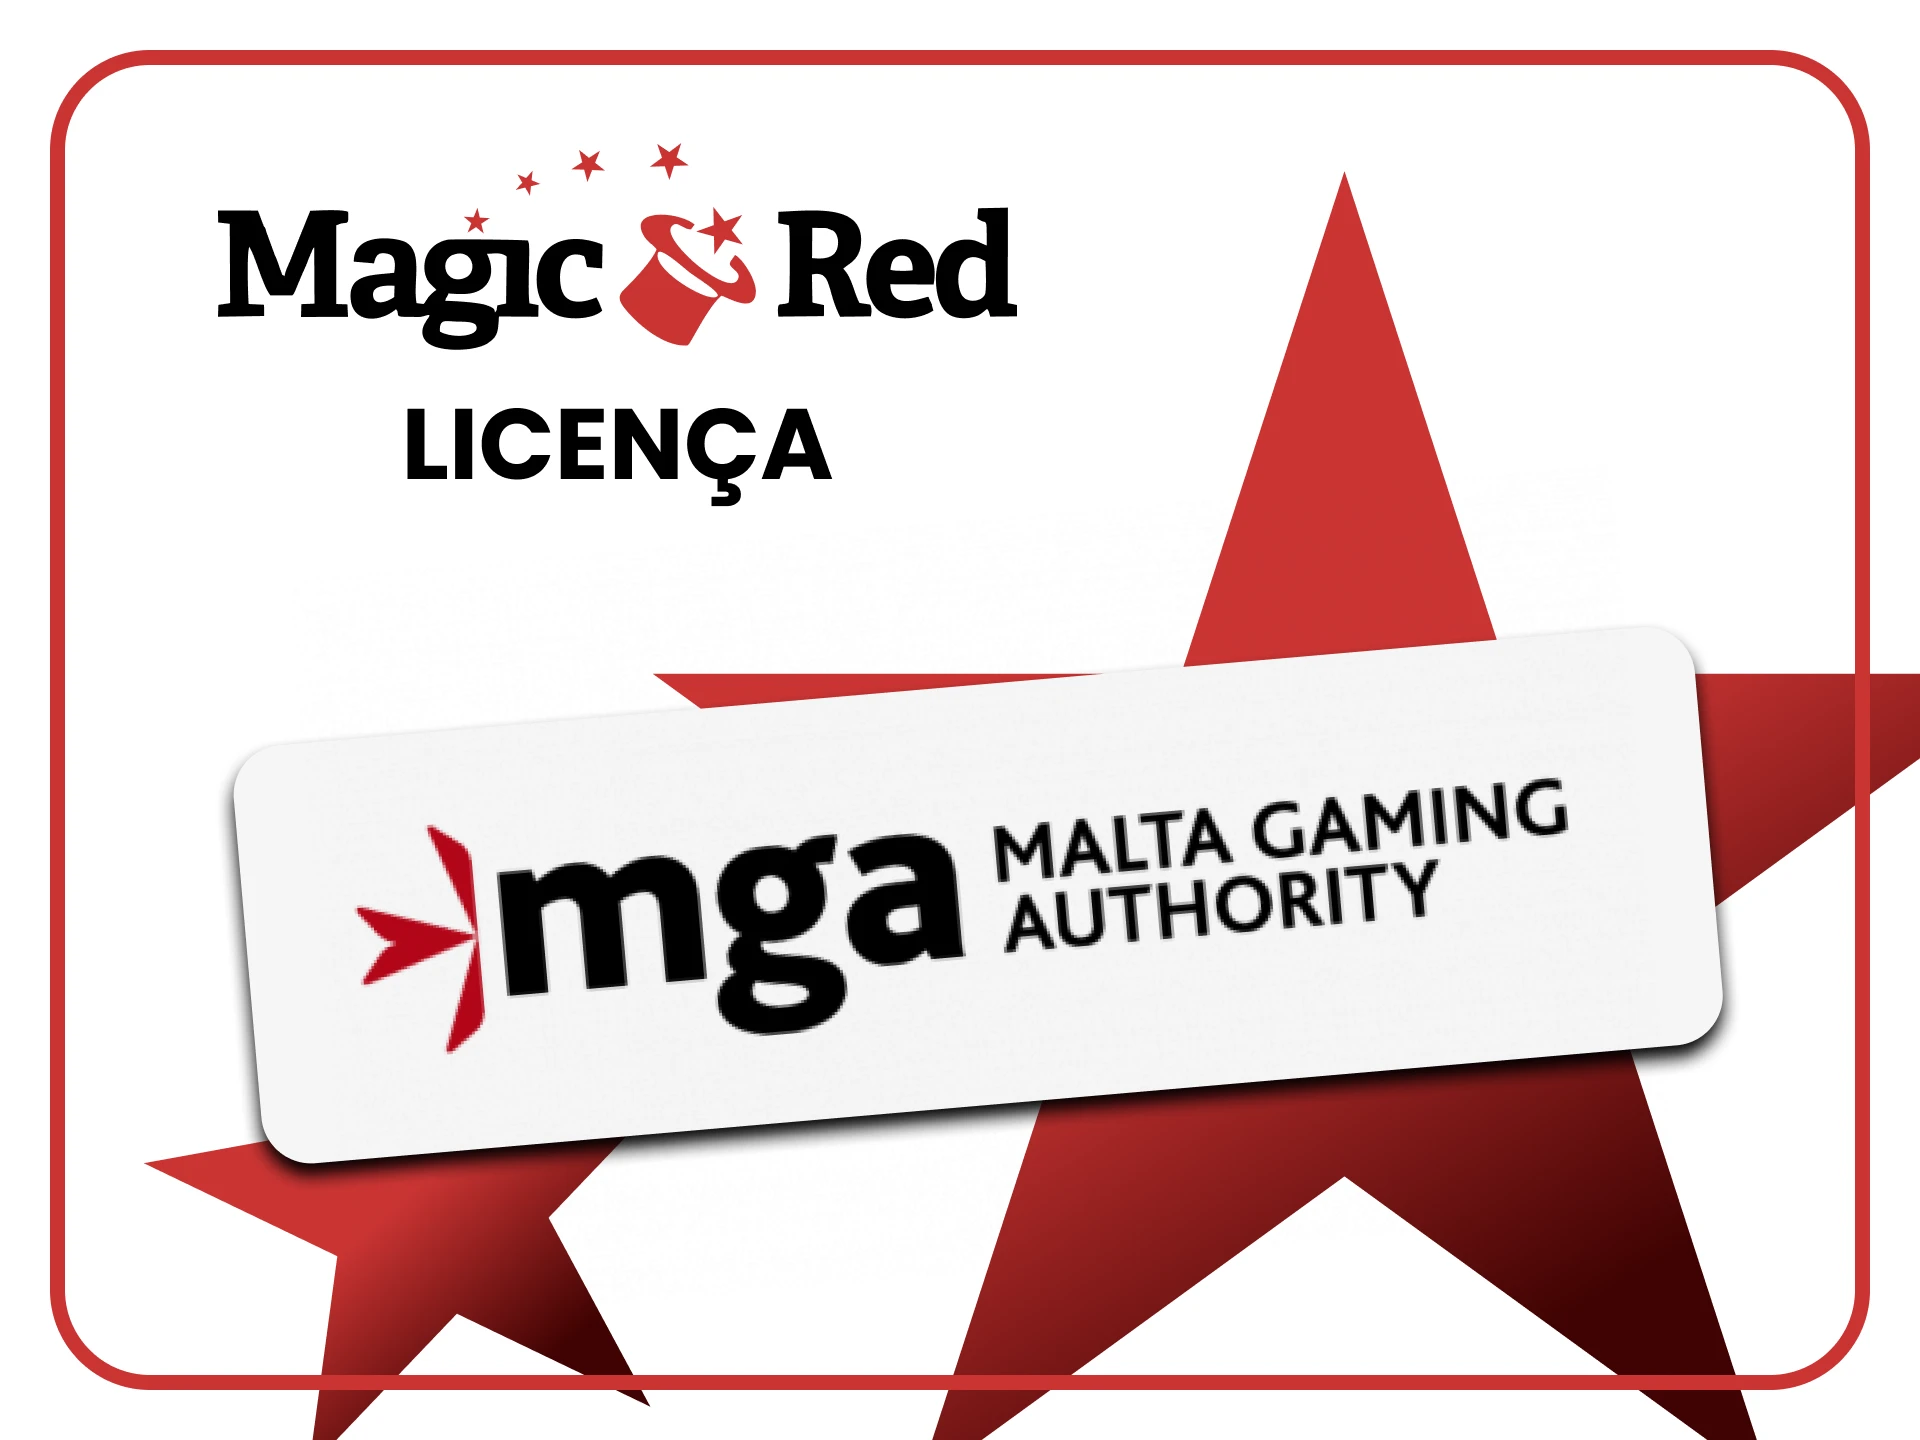 O Magic Red é legal no Brasil e funciona sob uma licença do Governo de Malta.